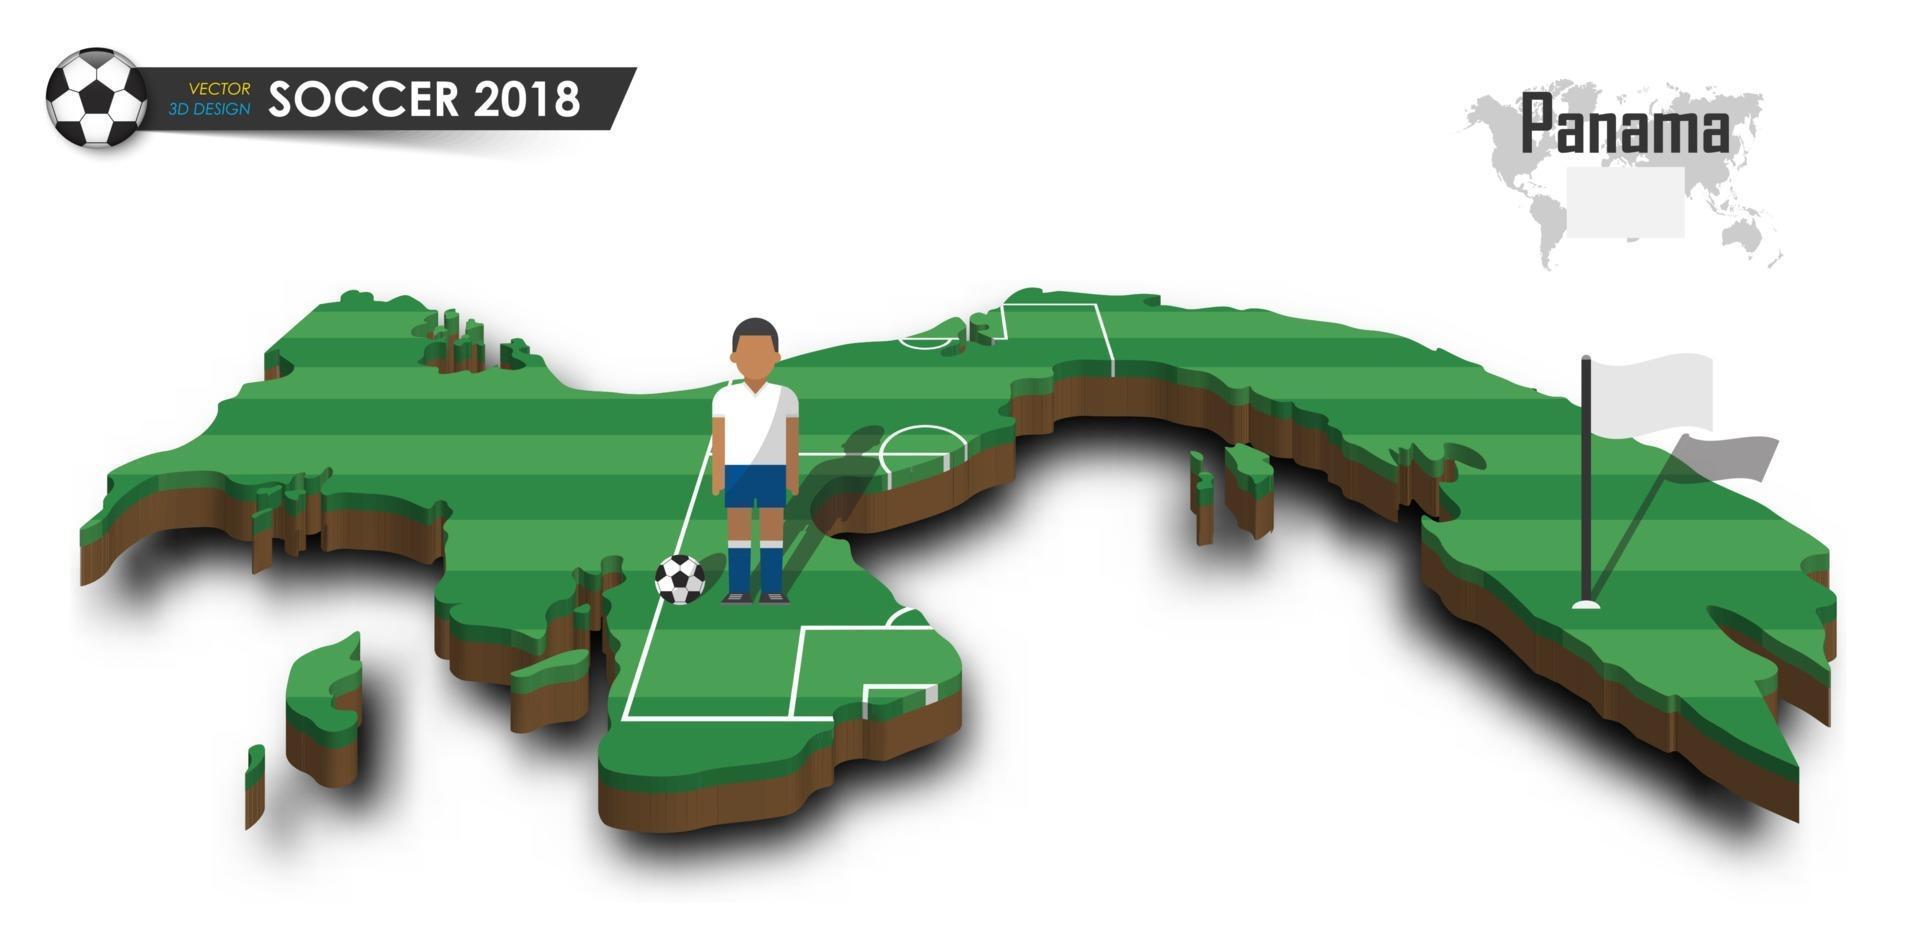 joueur de football de l'équipe nationale de football du panama et drapeau sur la carte du pays de conception 3d vecteur de fond isolé pour le concept de tournoi de championnat du monde international 2018